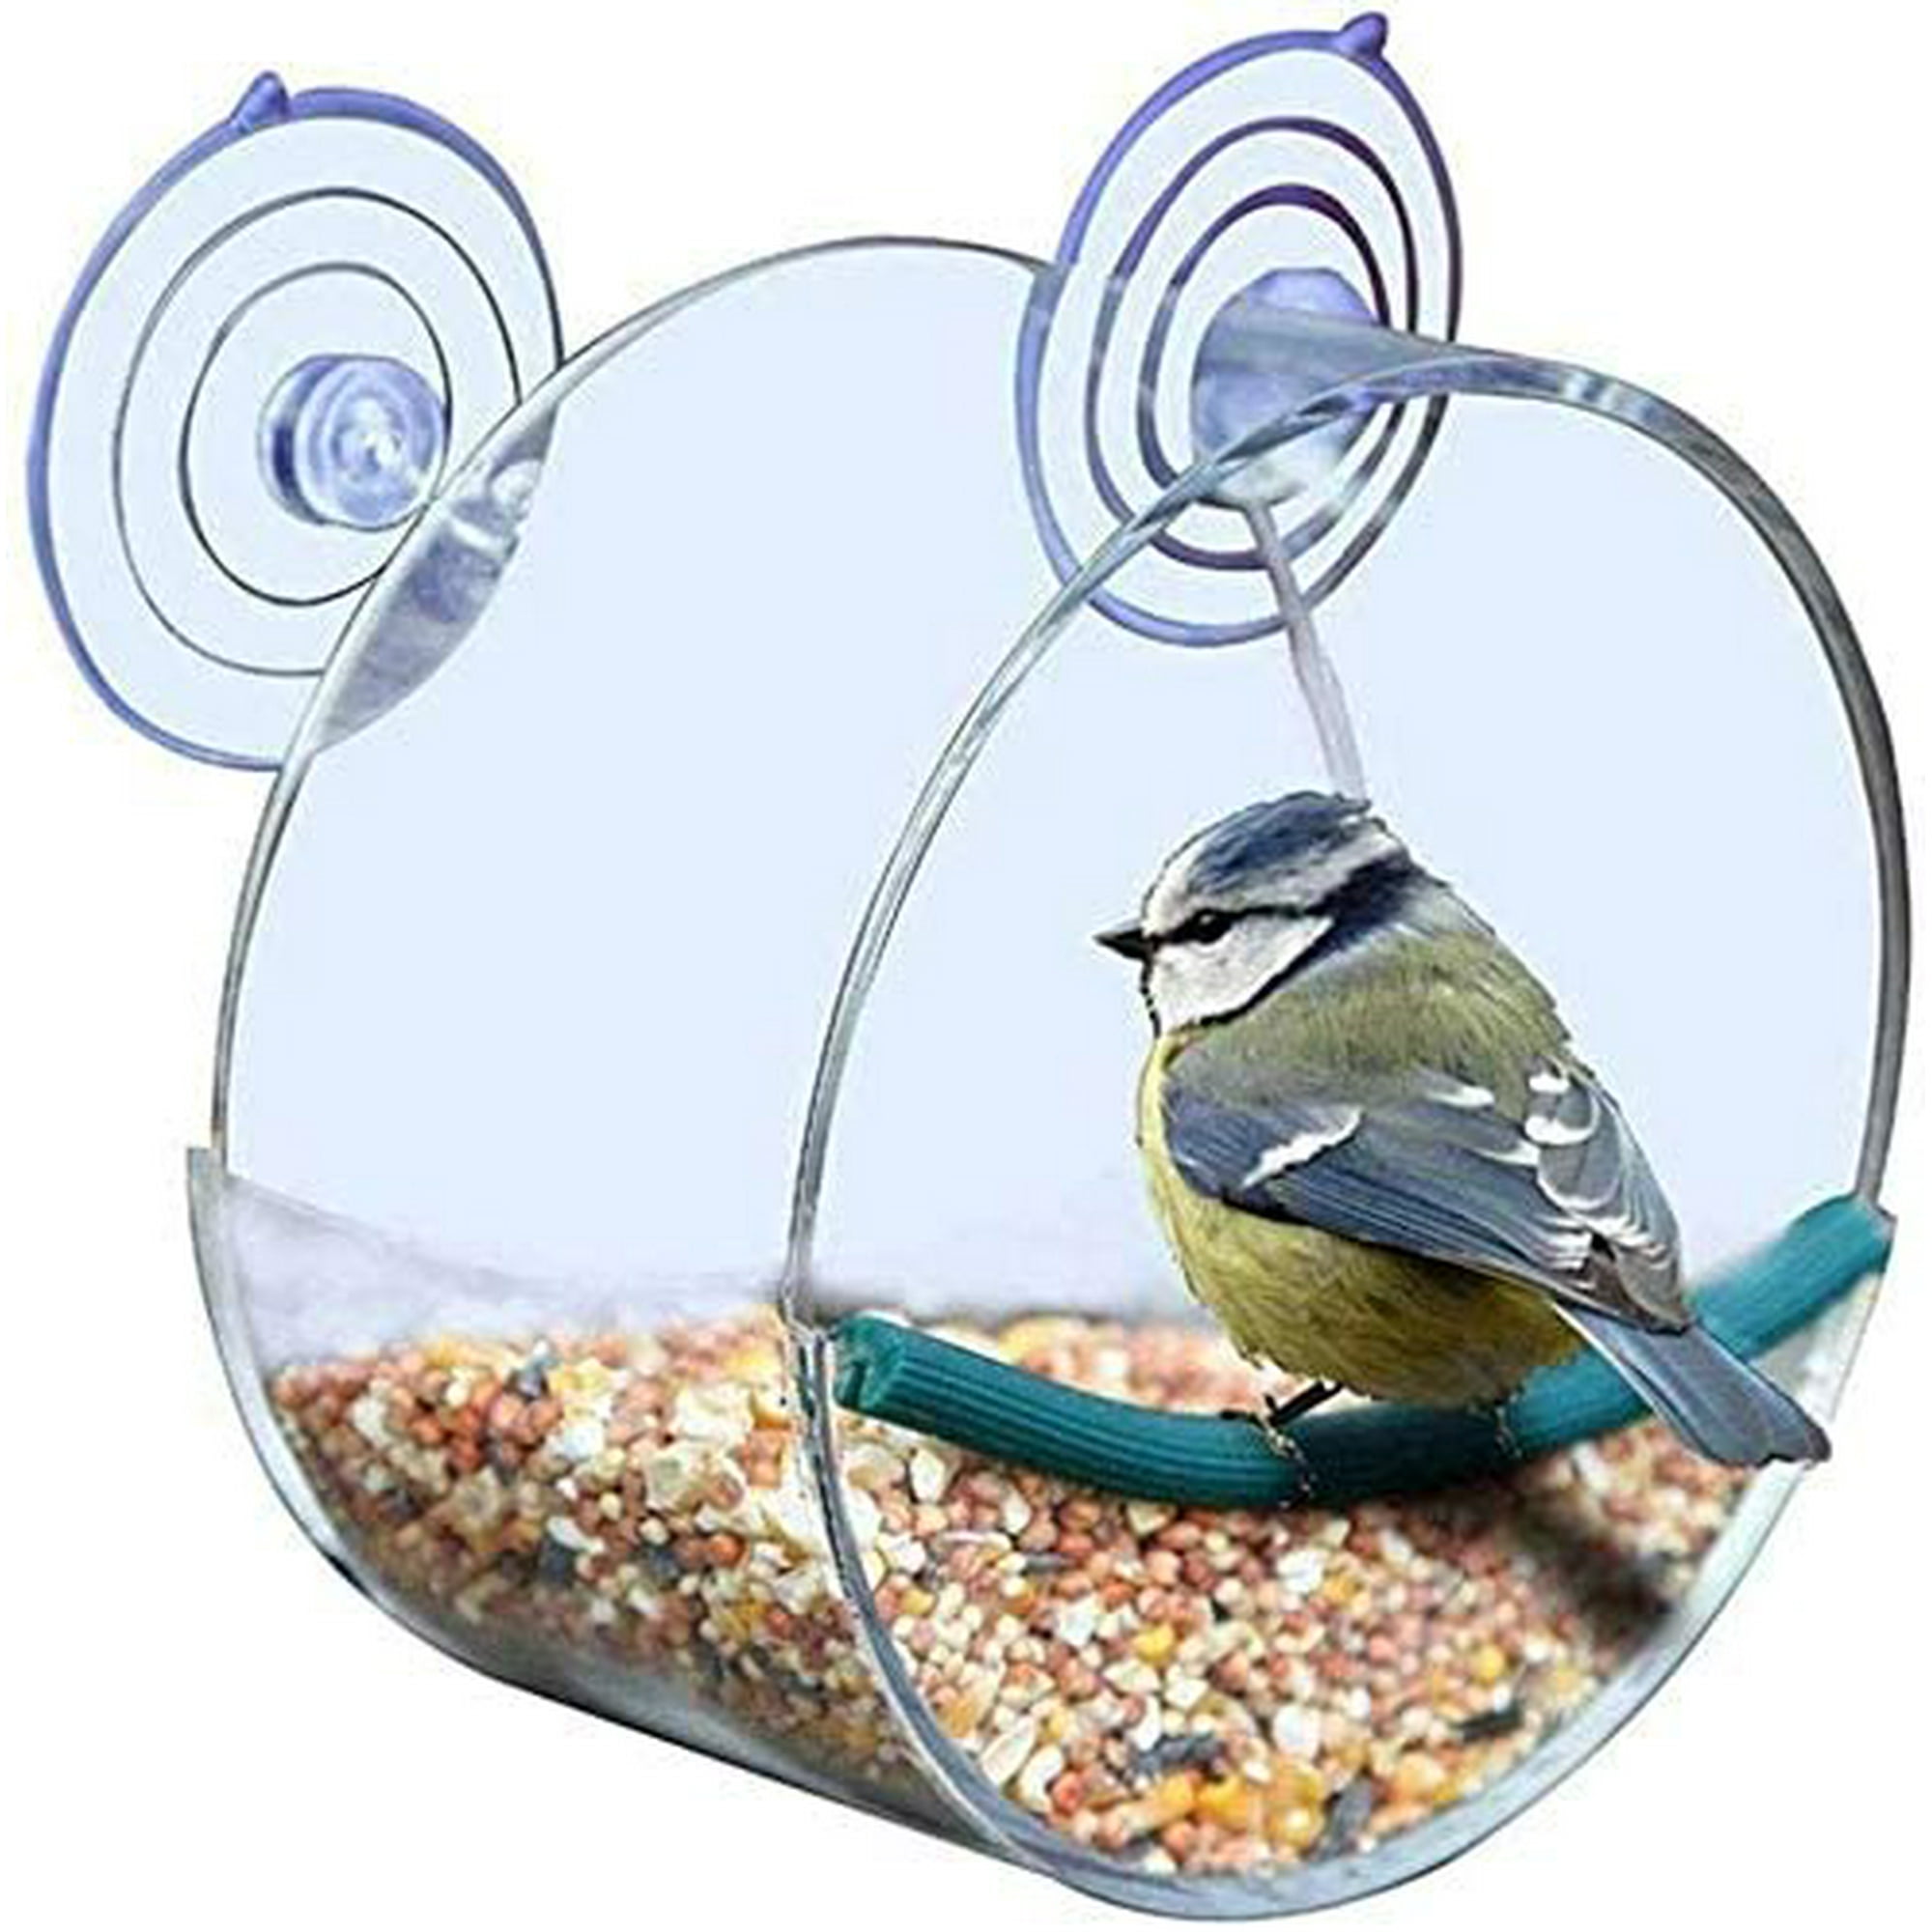 Mangeoire oiseaux transparente pour fenêtre avec ventouses, vente